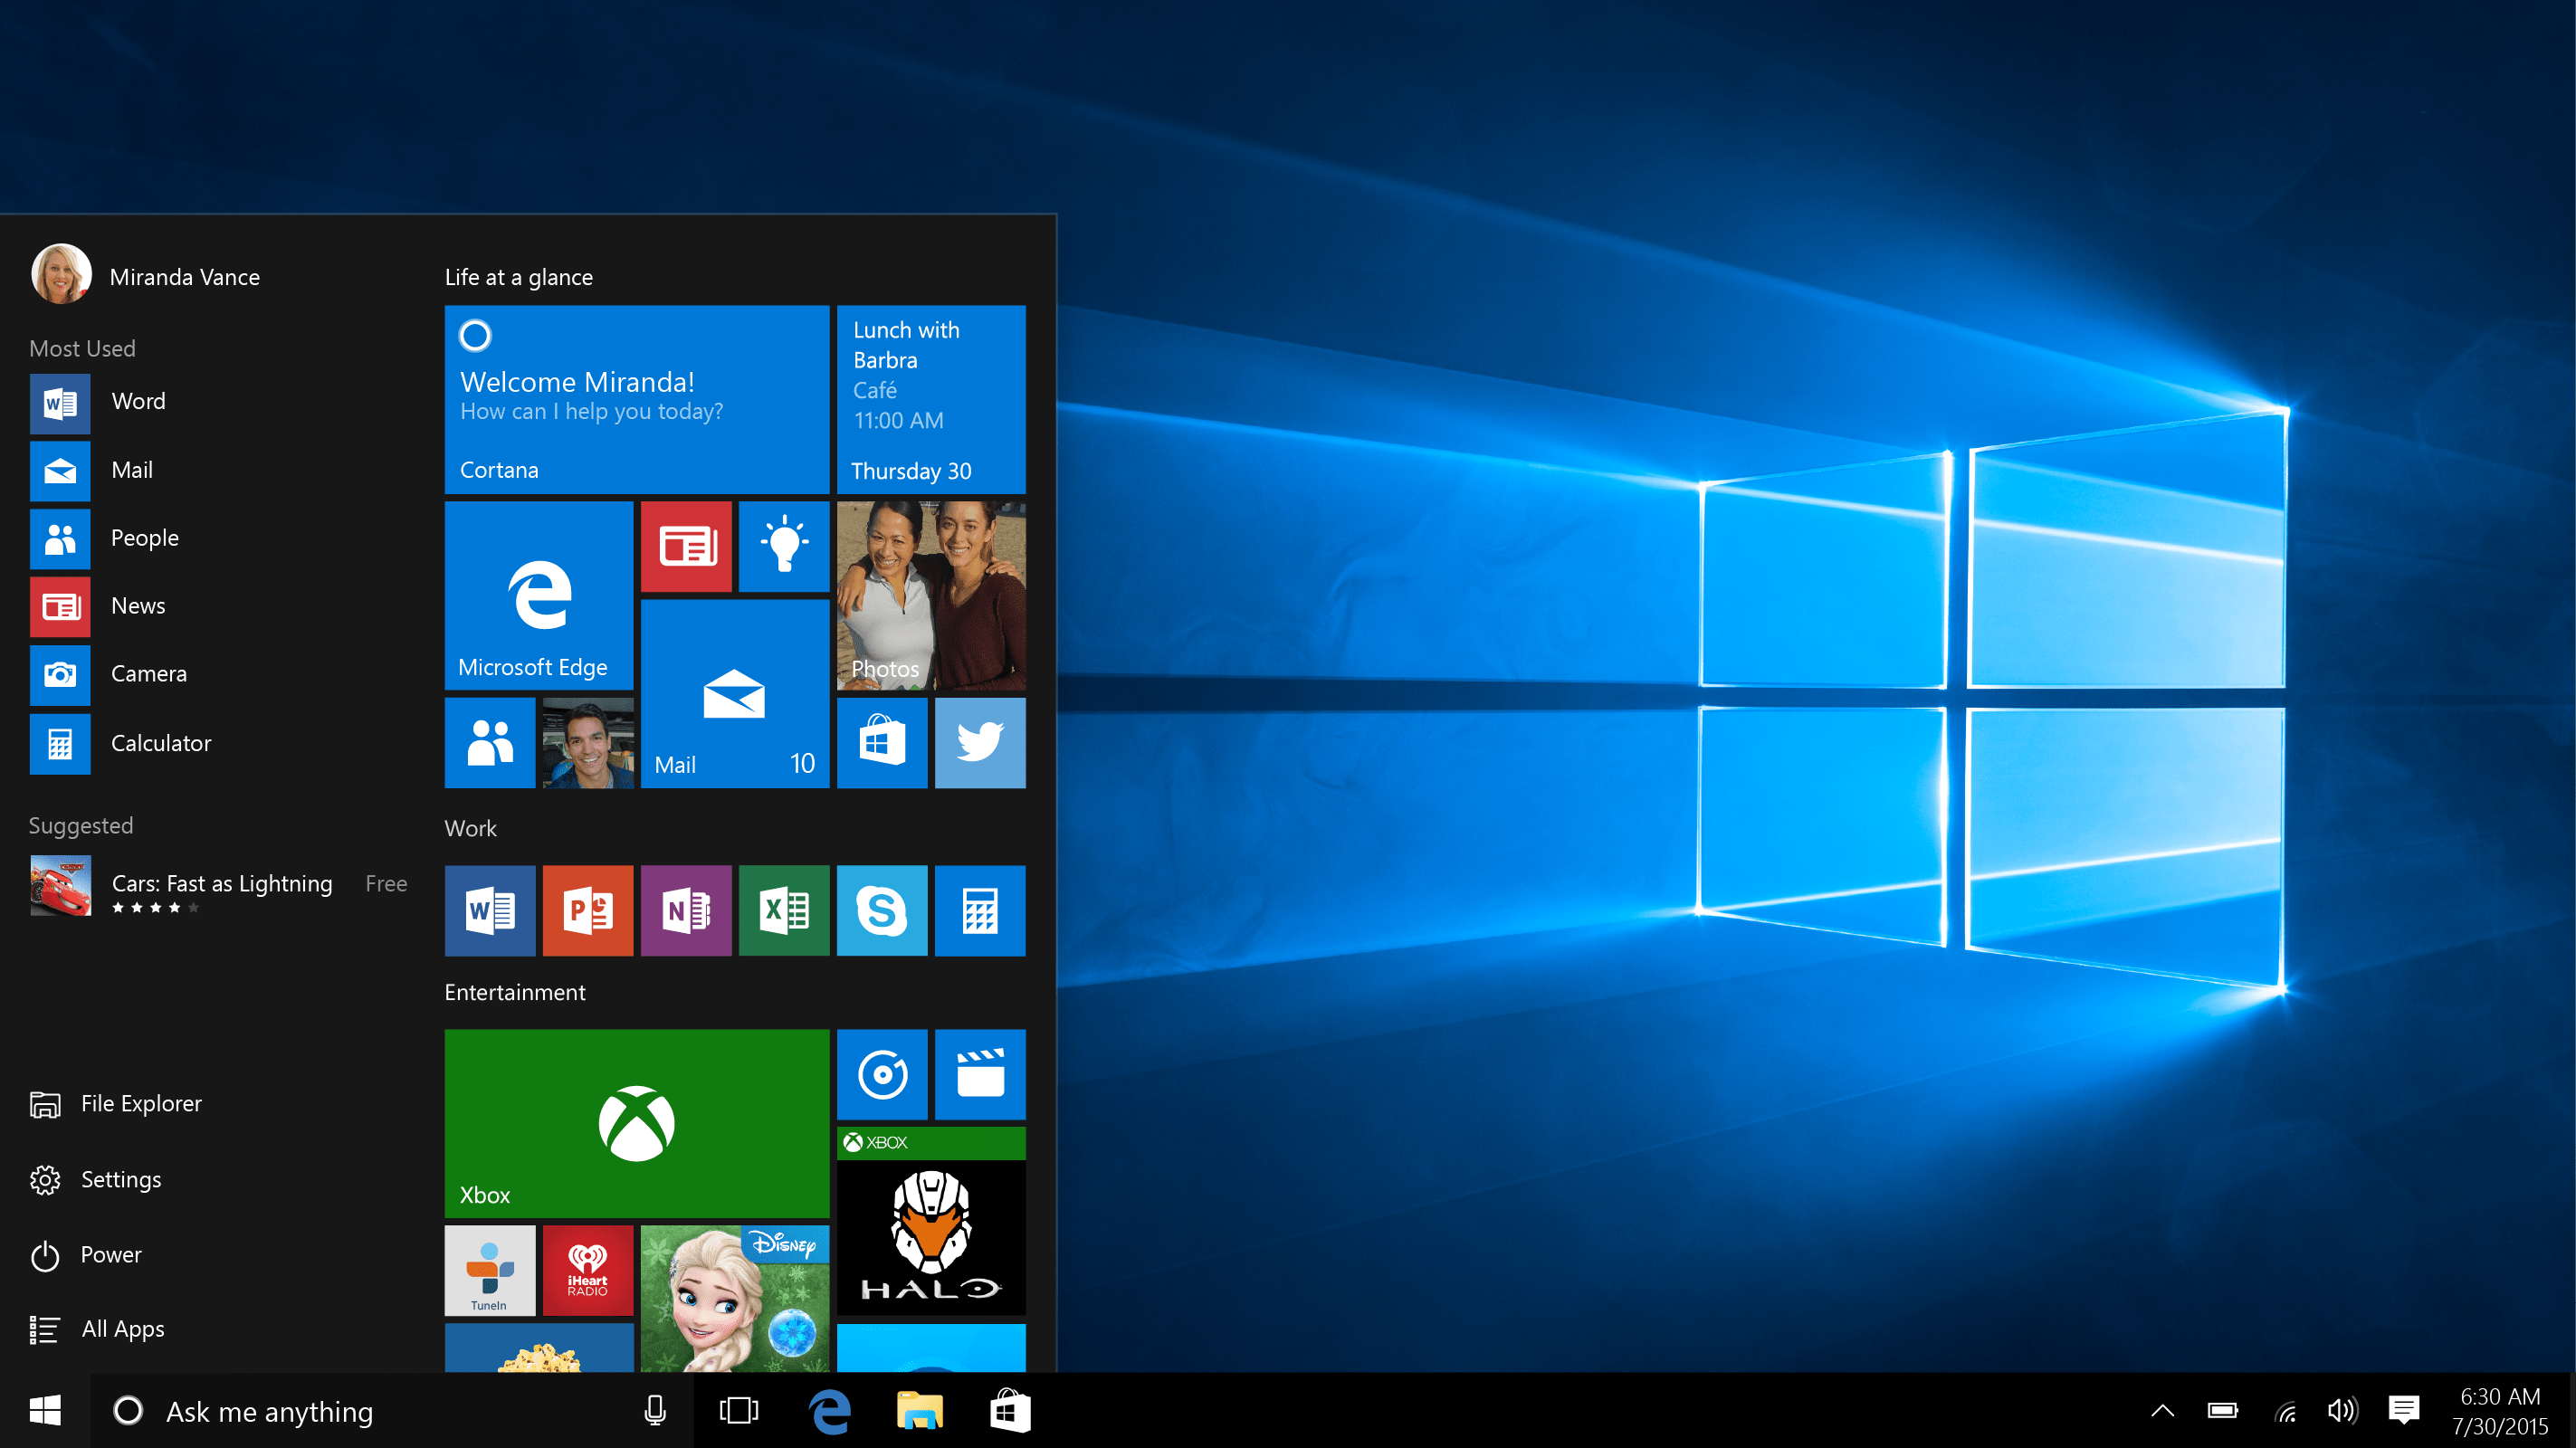 Cara mendapatkan bantuan dalam Windows 10: Sokongan dalam talian Microsoft dapat menyelesaikan masalah anda